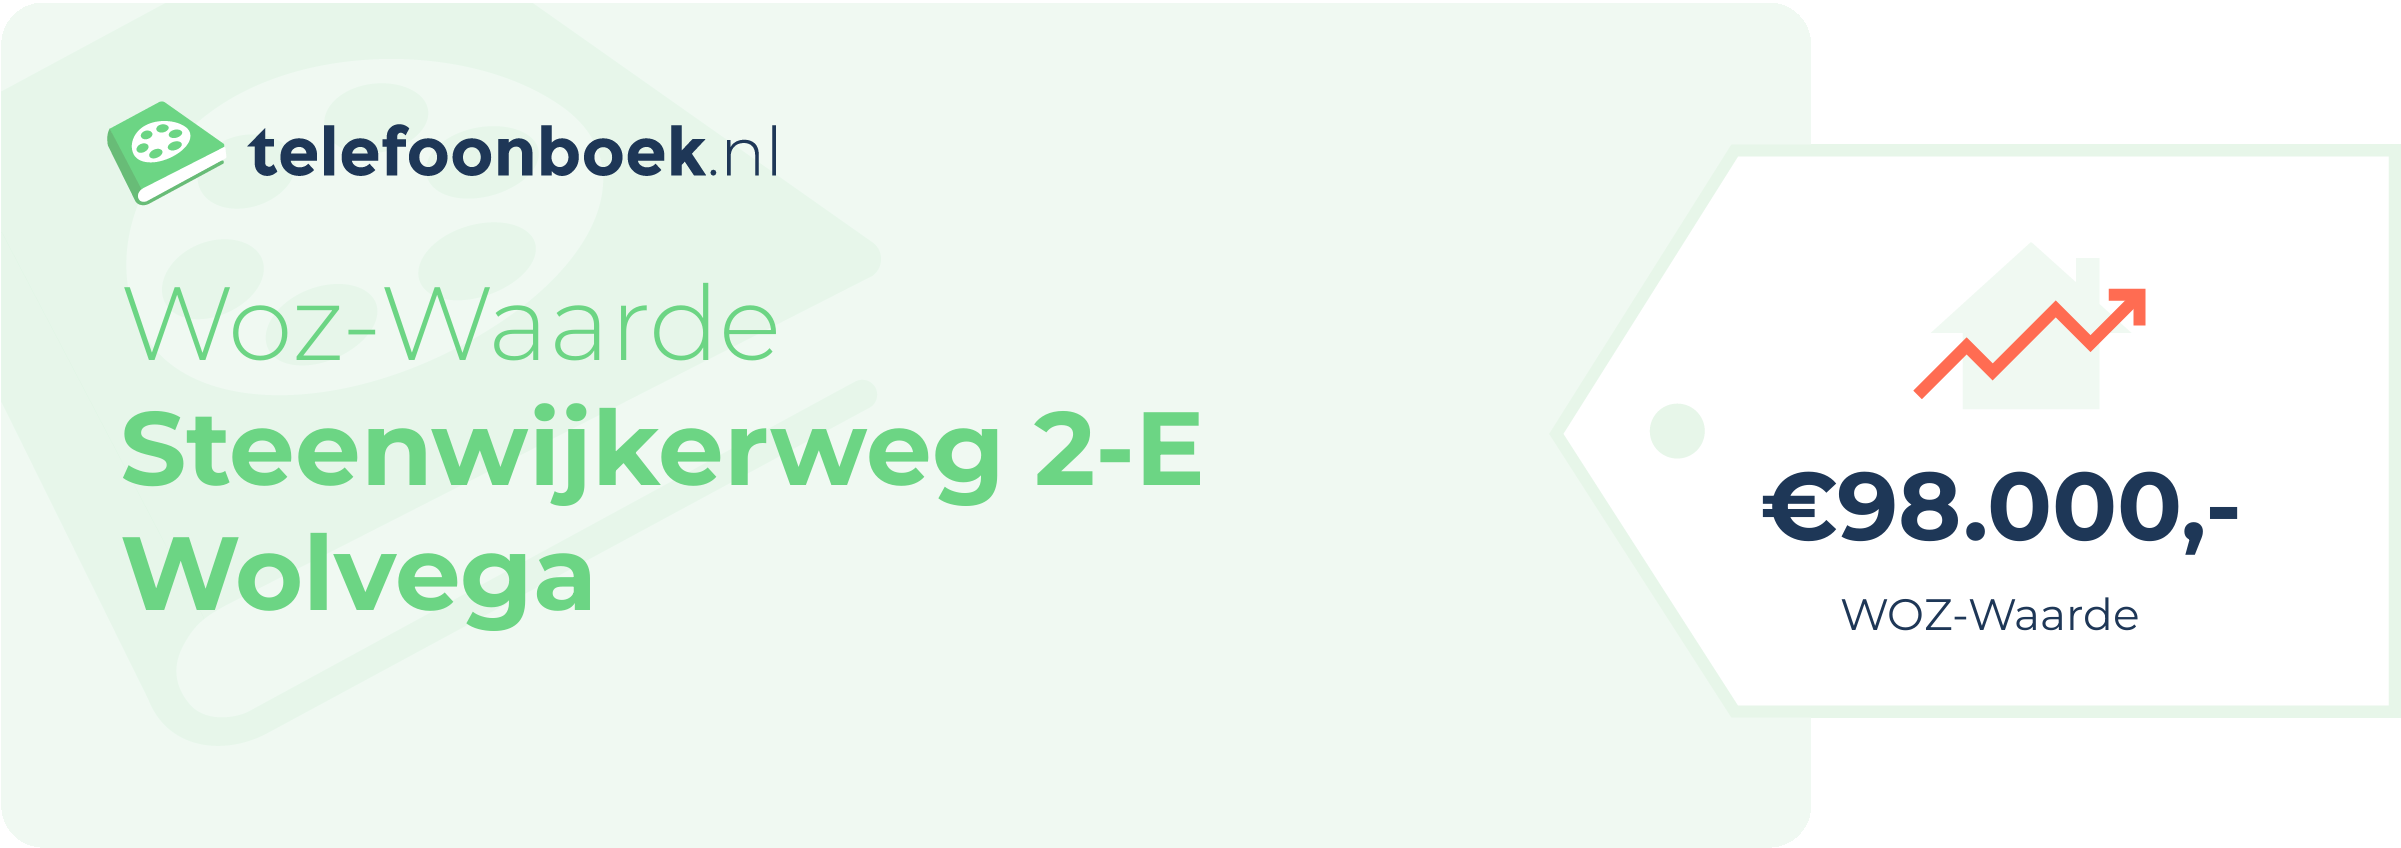 WOZ-waarde Steenwijkerweg 2-E Wolvega